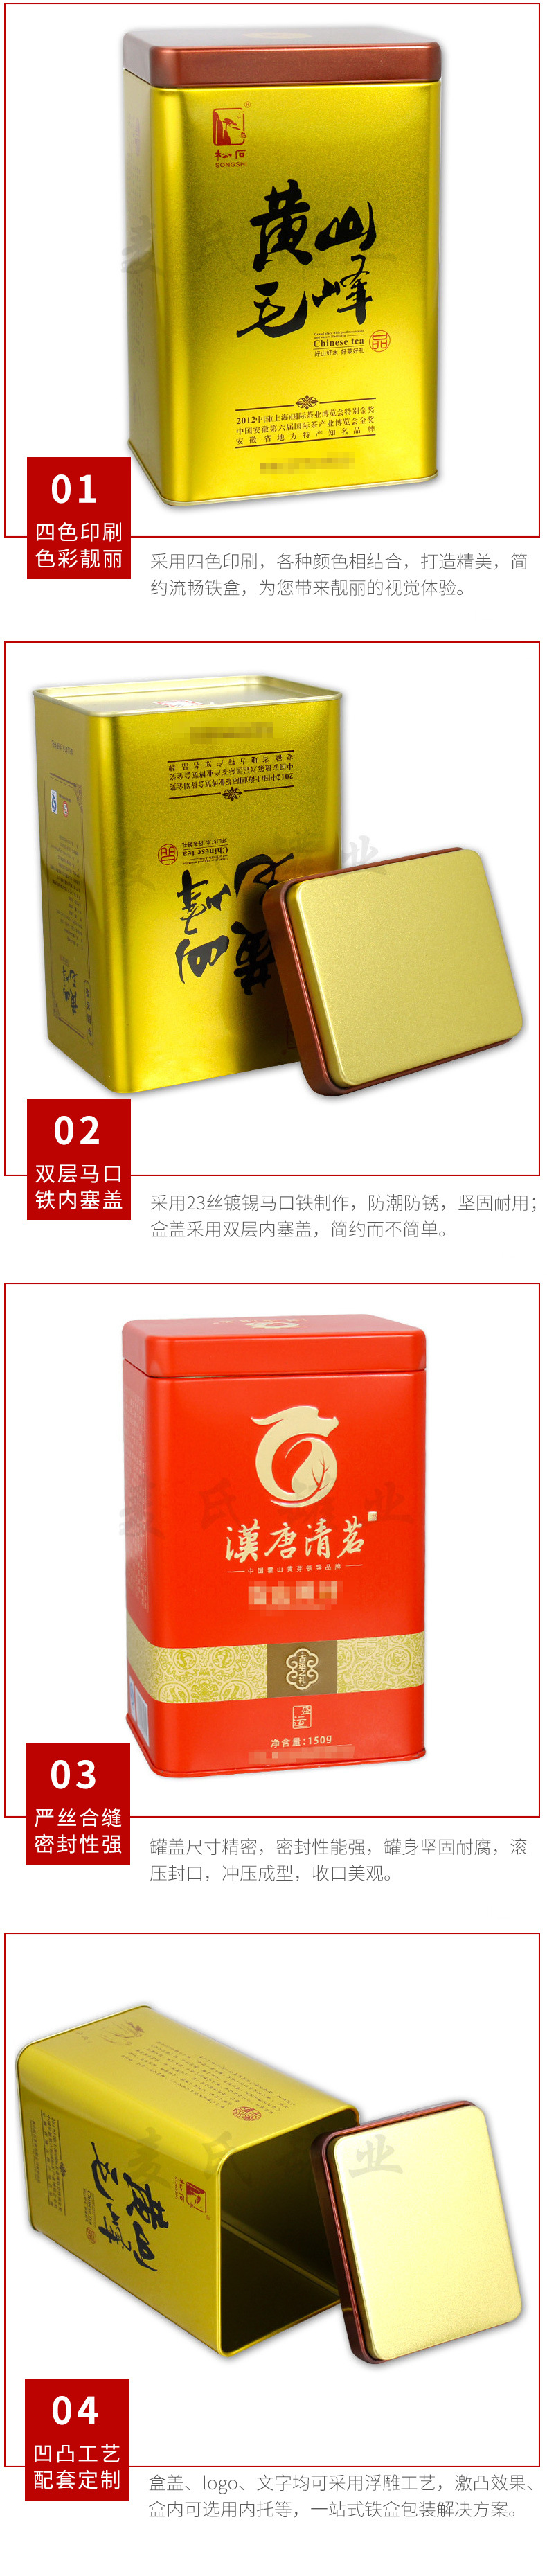 厂家定做通用黄山毛峰茶叶盒 50g装铁质黄山毛峰礼盒 免费拿样示例图14